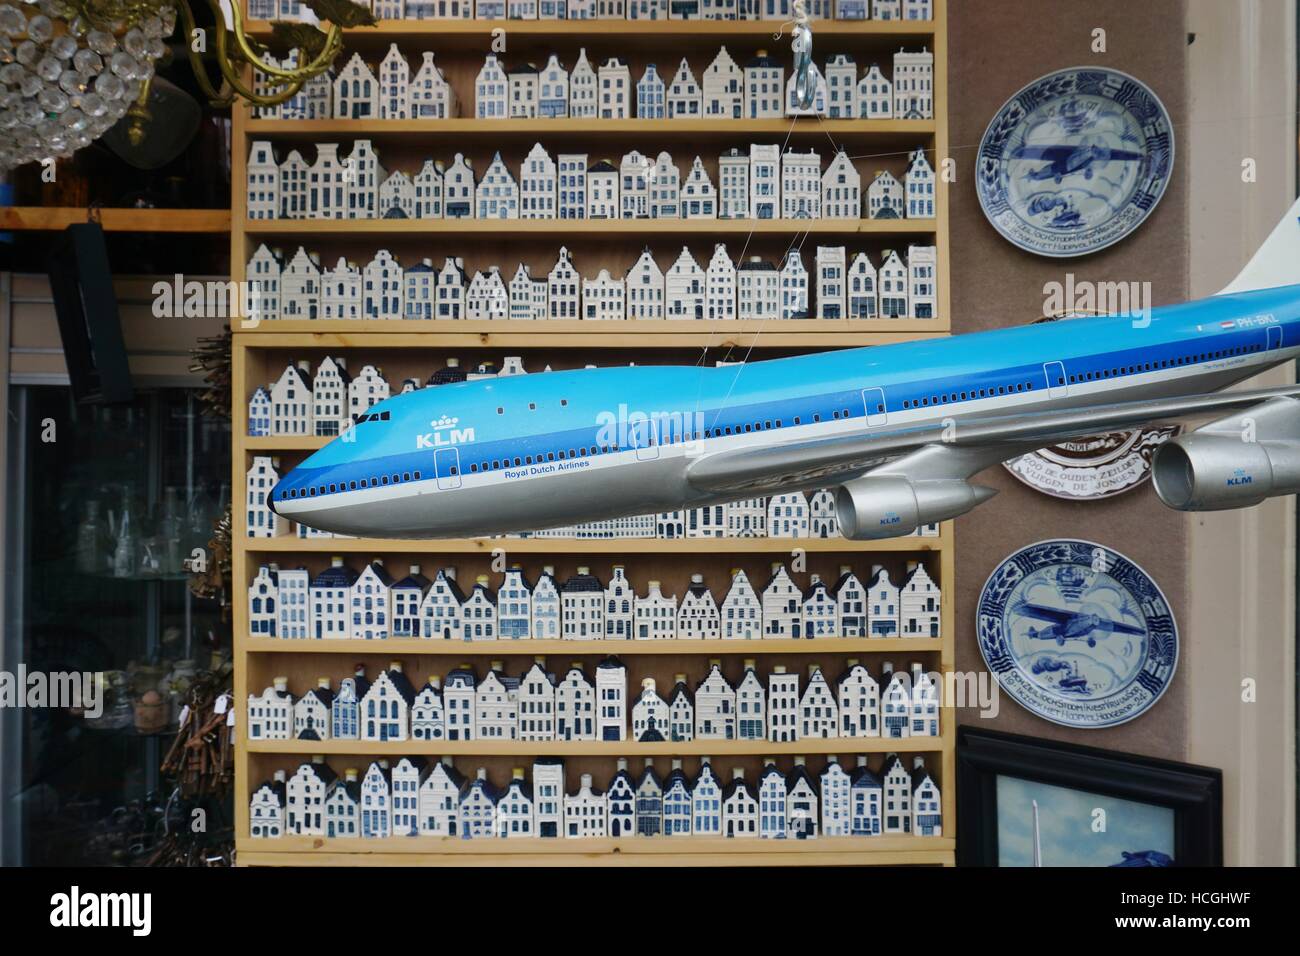 Befindet sich eine Shop Verkauf Sammler KLM Annehmlichkeiten Miniatur Delfter Porzellan und KLM Flugzeug Modelle in Amsterdam, Niederlande Stockfoto